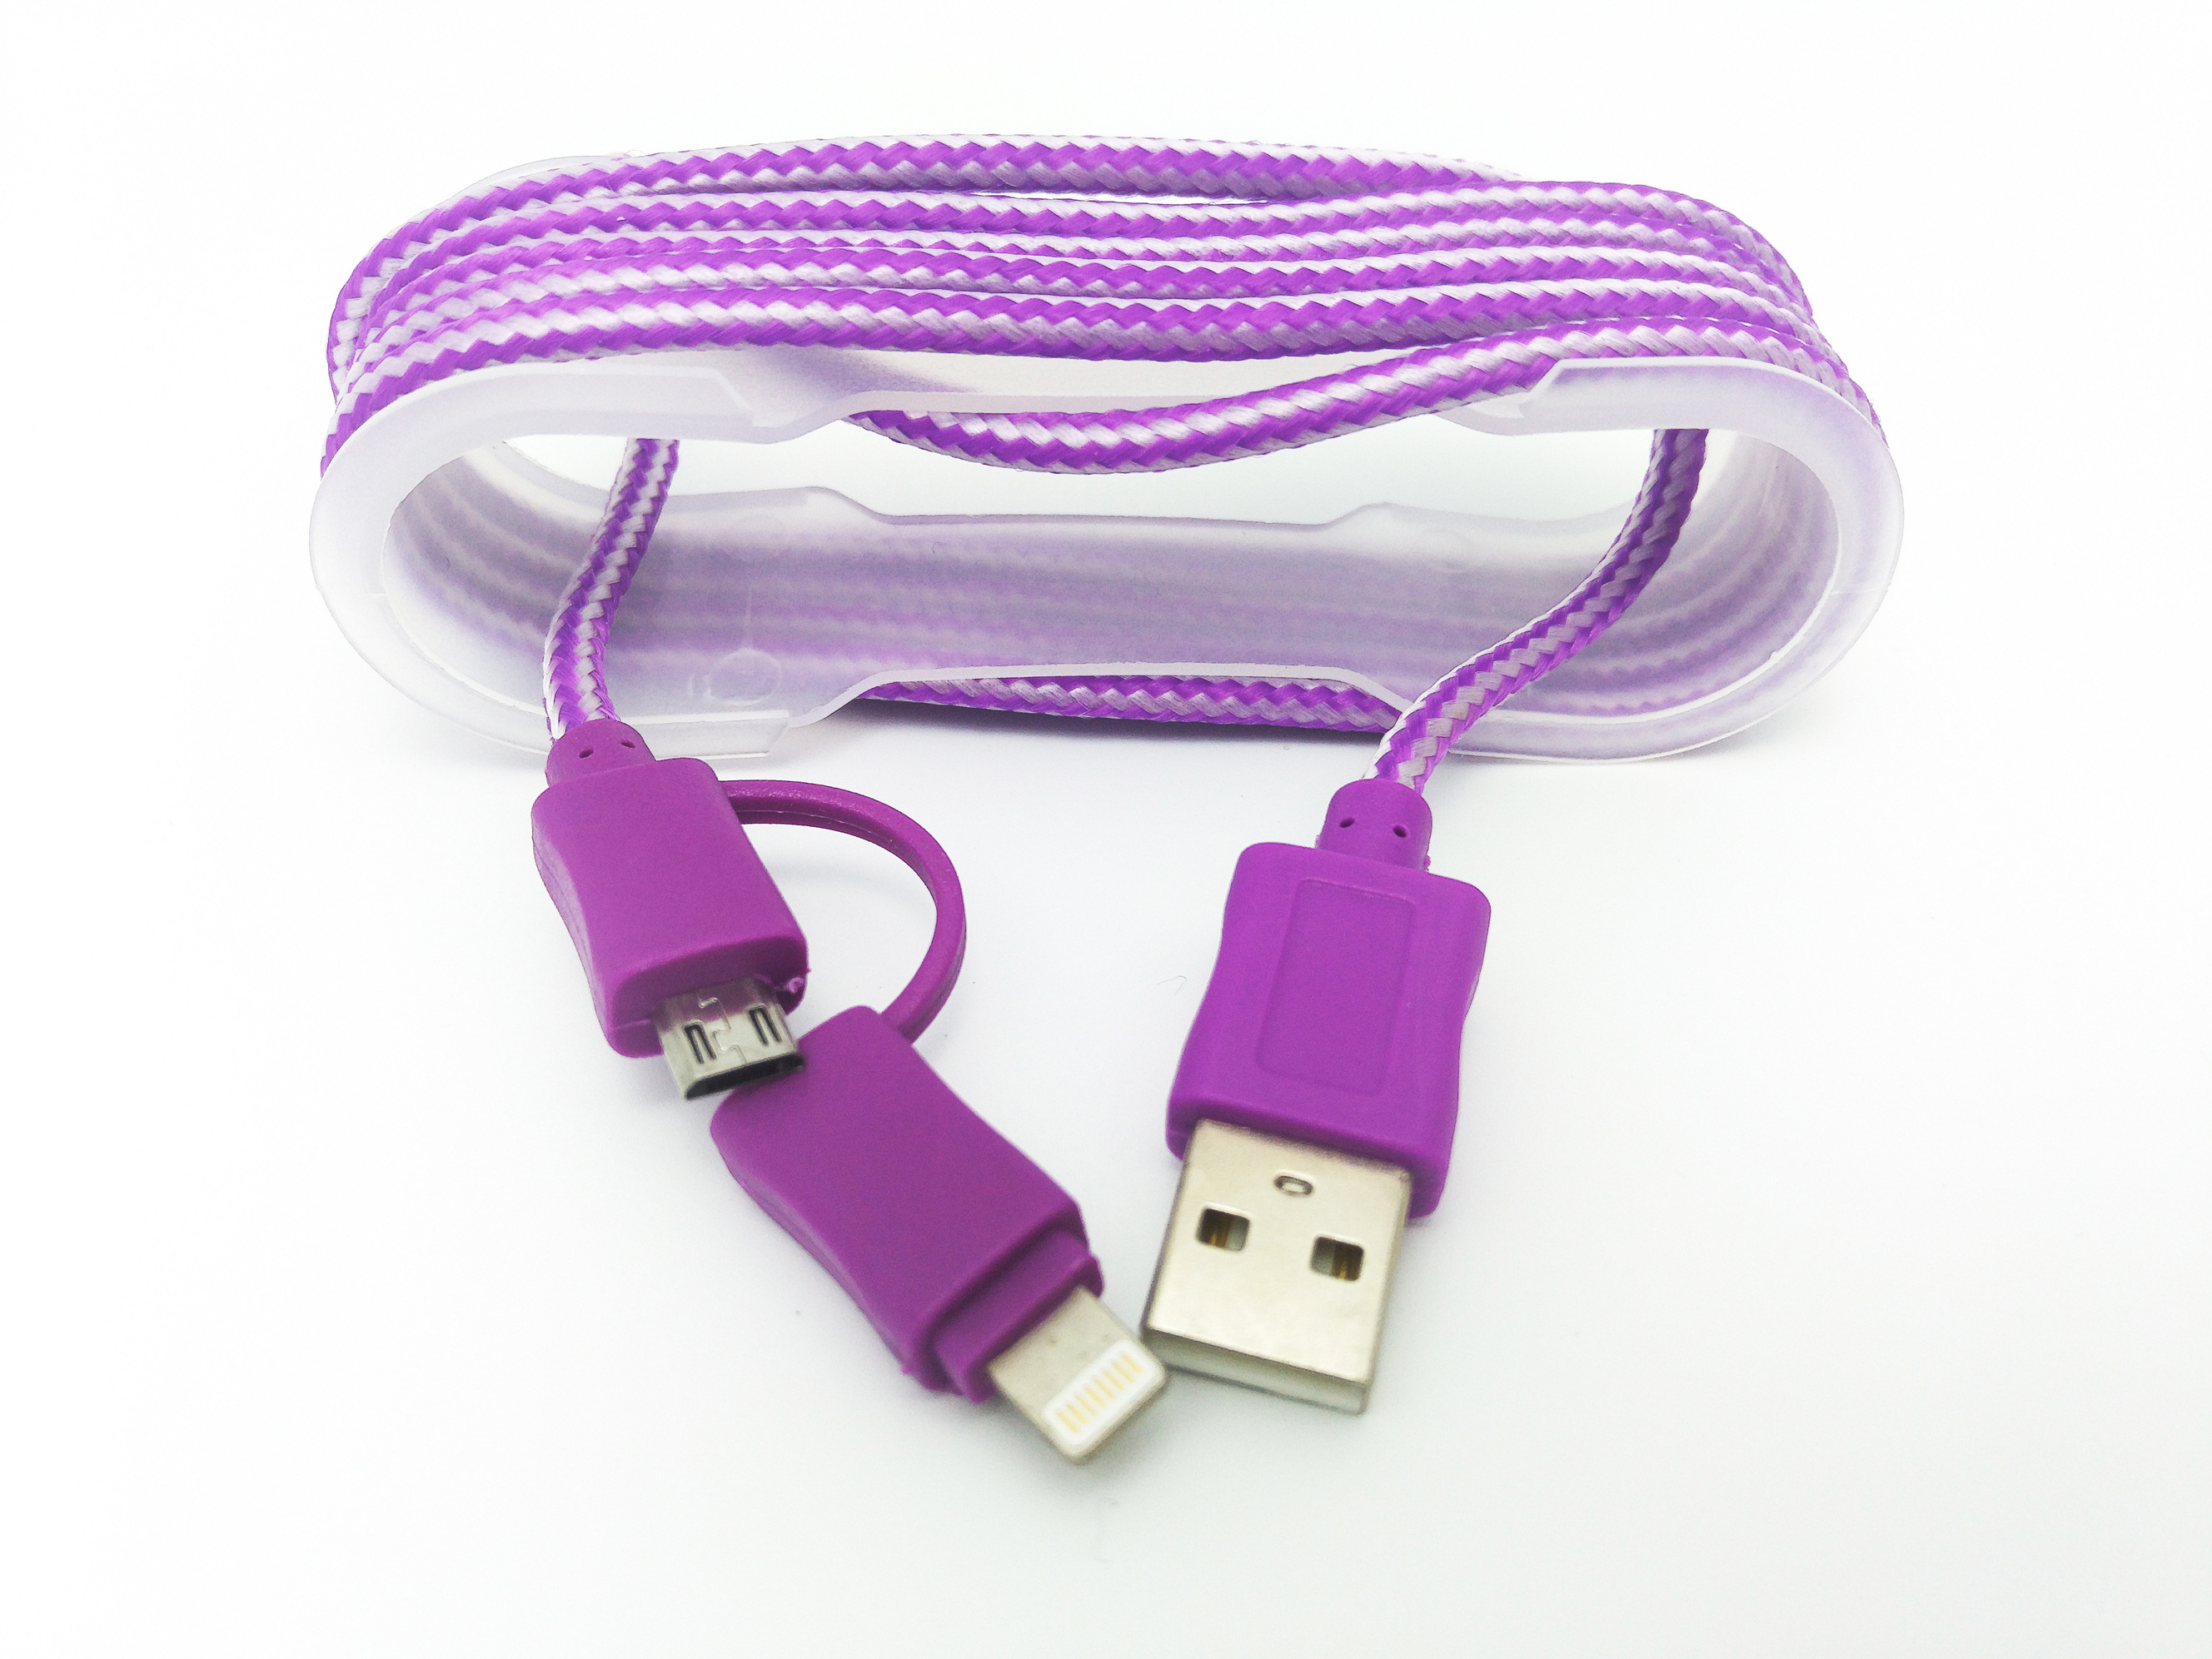 Cablu De Date MRG M-171, 2 In 1, Iphone 5/6 + Micro USB, Mov